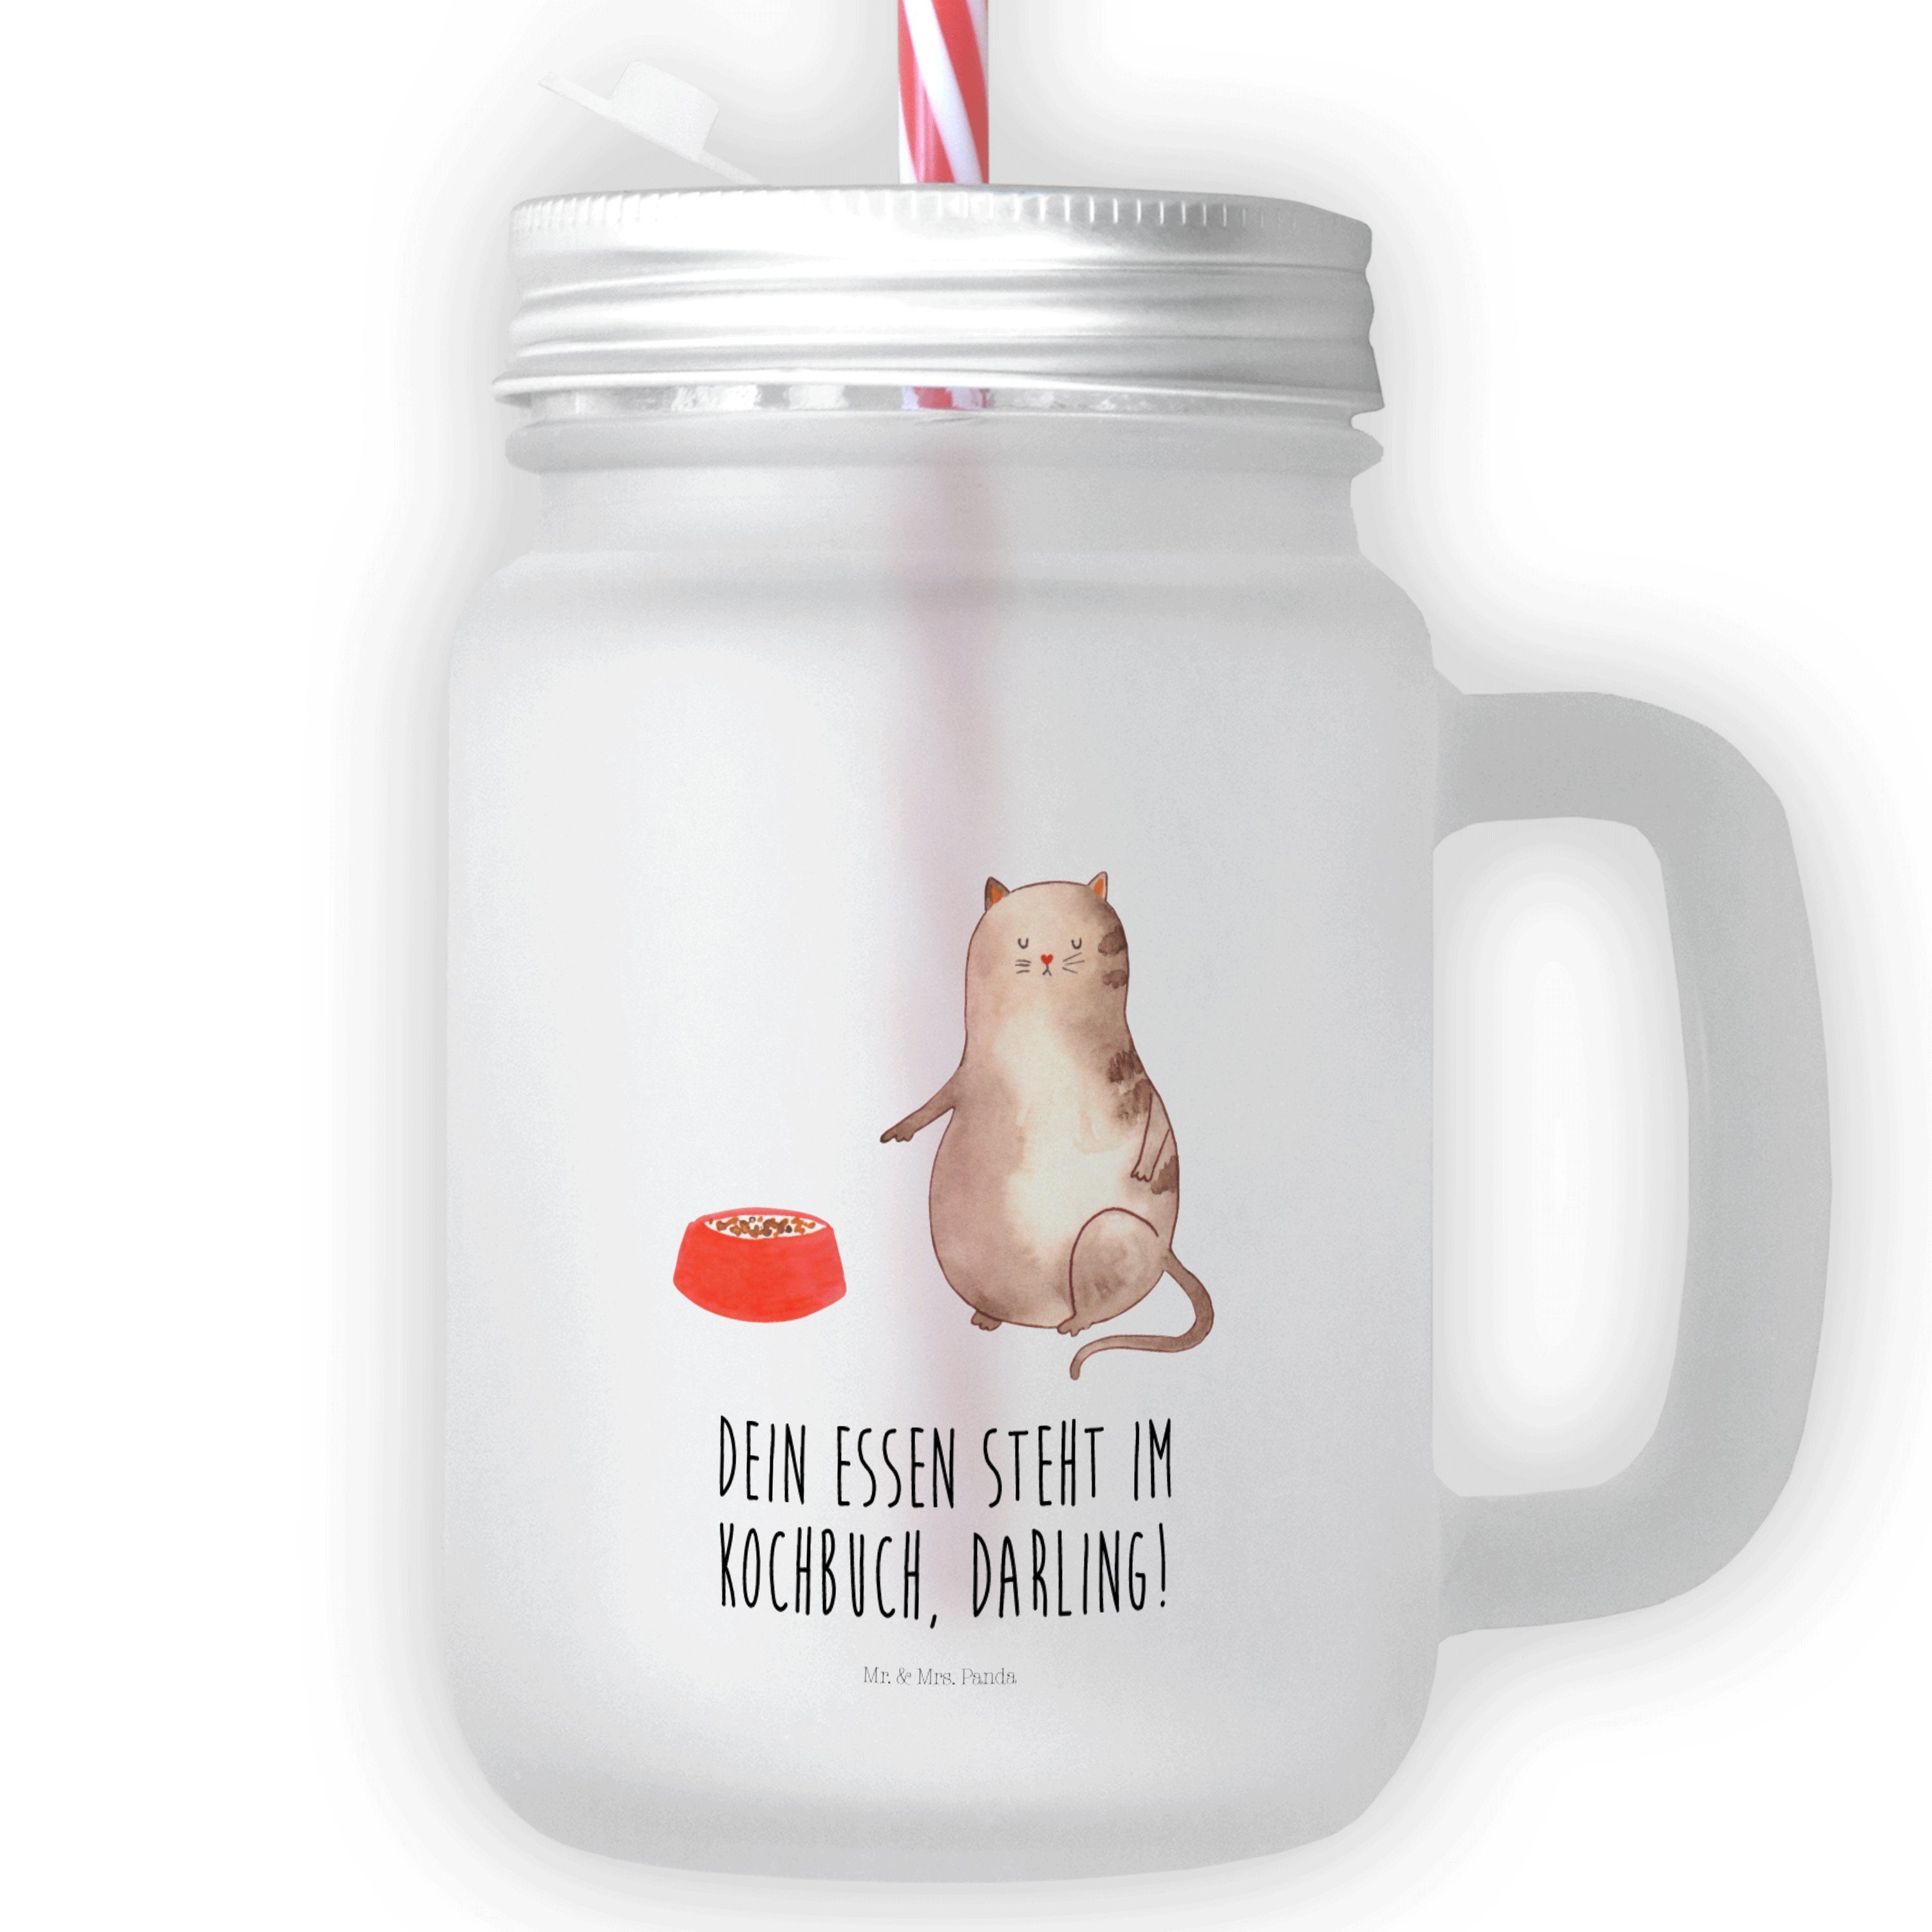 Mr. & Mrs. Panda Glas Katze fressen - Transparent - Geschenk, Katzenmotiv, Henkelglas, Glas, Premium Glas